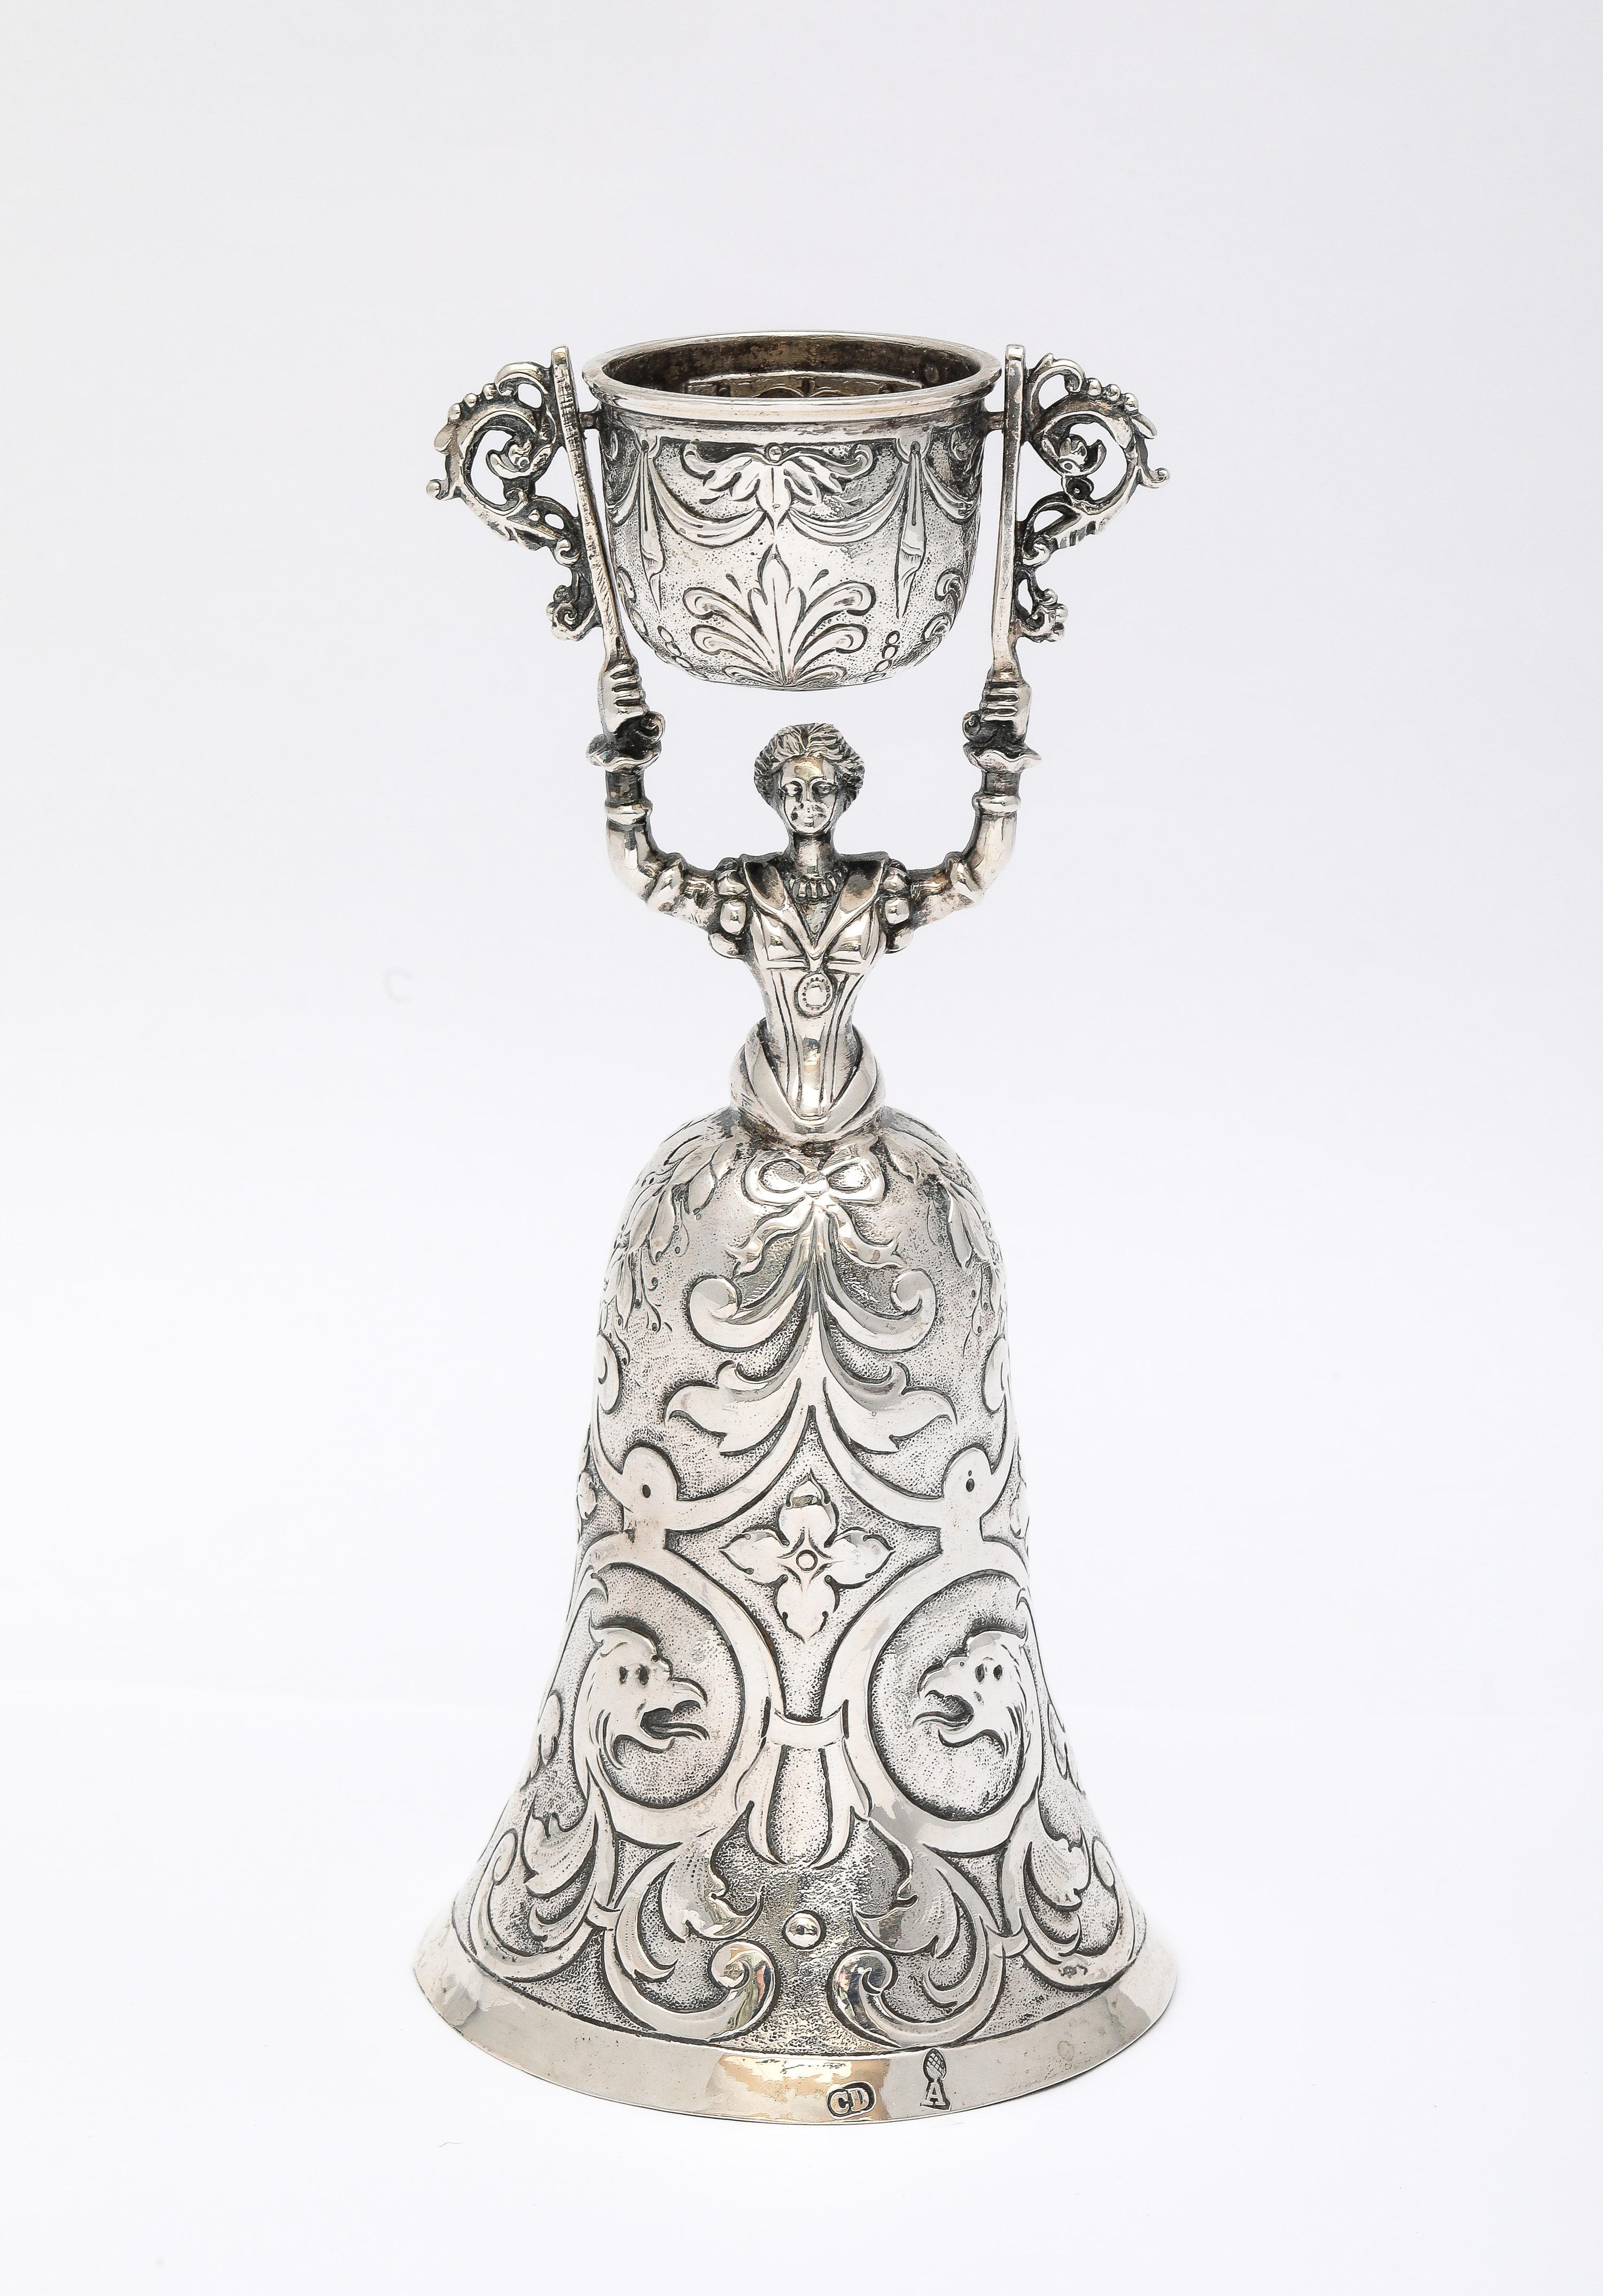 Seltener, 18. Jahrhundert, Kontinentalsilber (.800) Wager/Marriage Cup, Augsburg, 1781-1783, Christian Drentwert II - Hersteller. Die Figur stellt eine Frau dar, die mit erhobenen Armen eine Tasse auf einer Drehscheibe hochhält. Ihr Rock ist mit